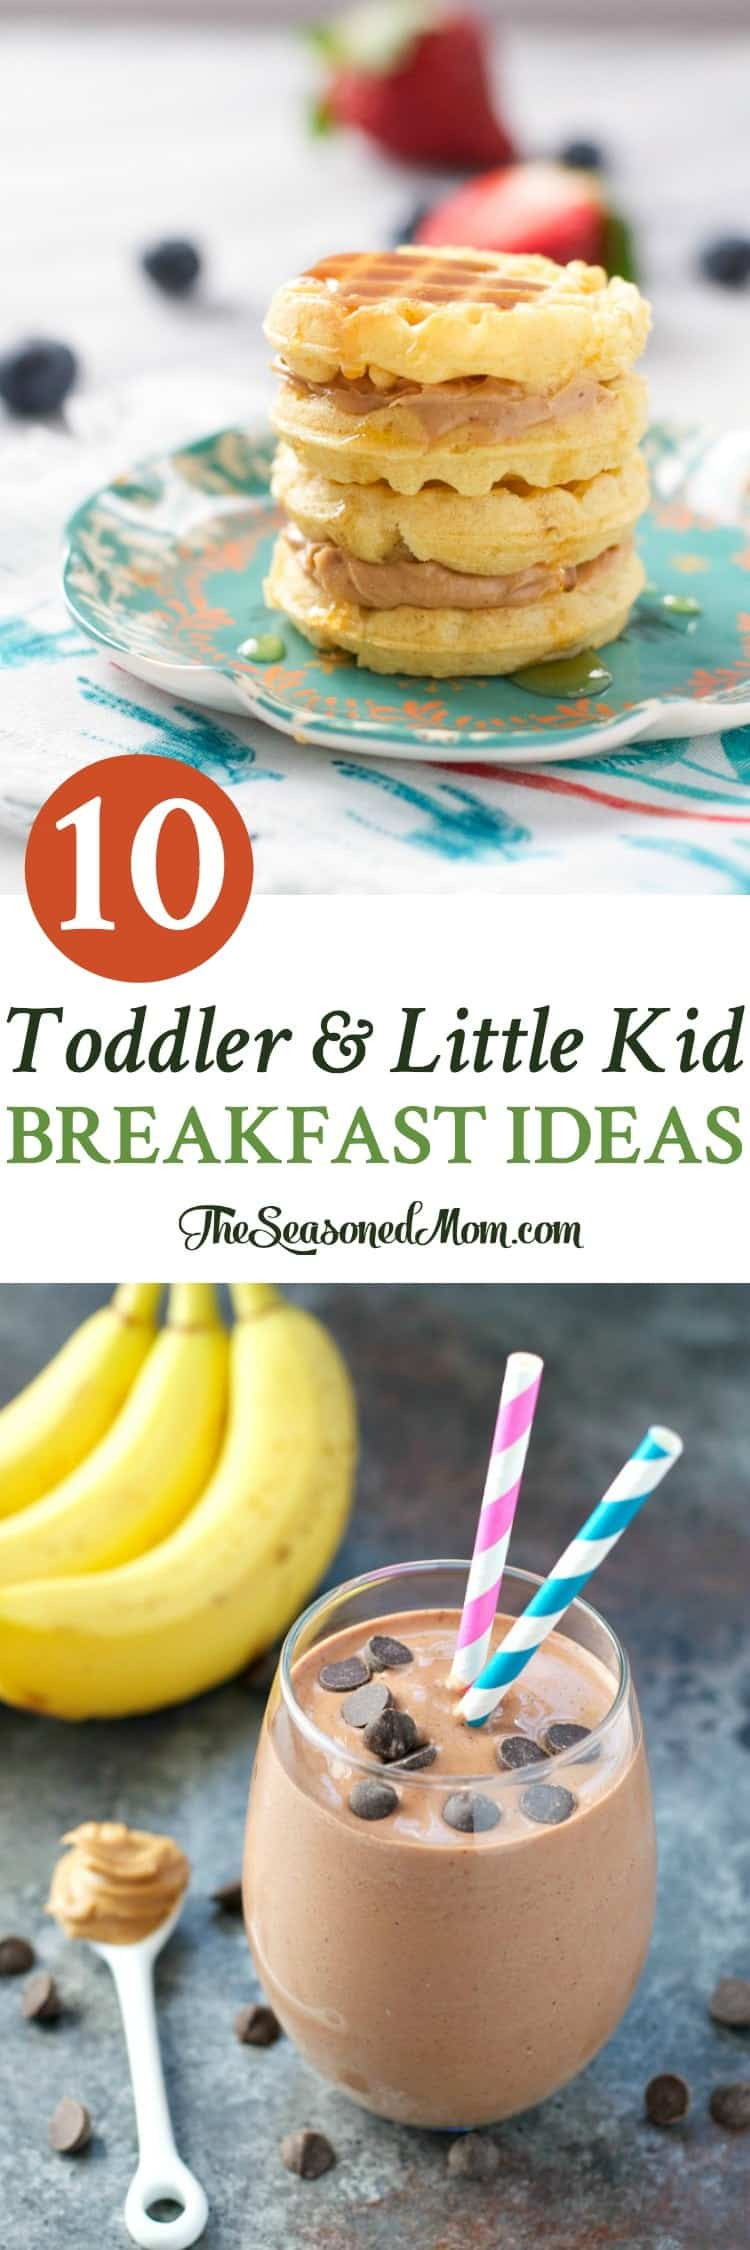 Best Healthy Breakfast
 10 Toddler and Little Kid Breakfast Ideas The Seasoned Mom